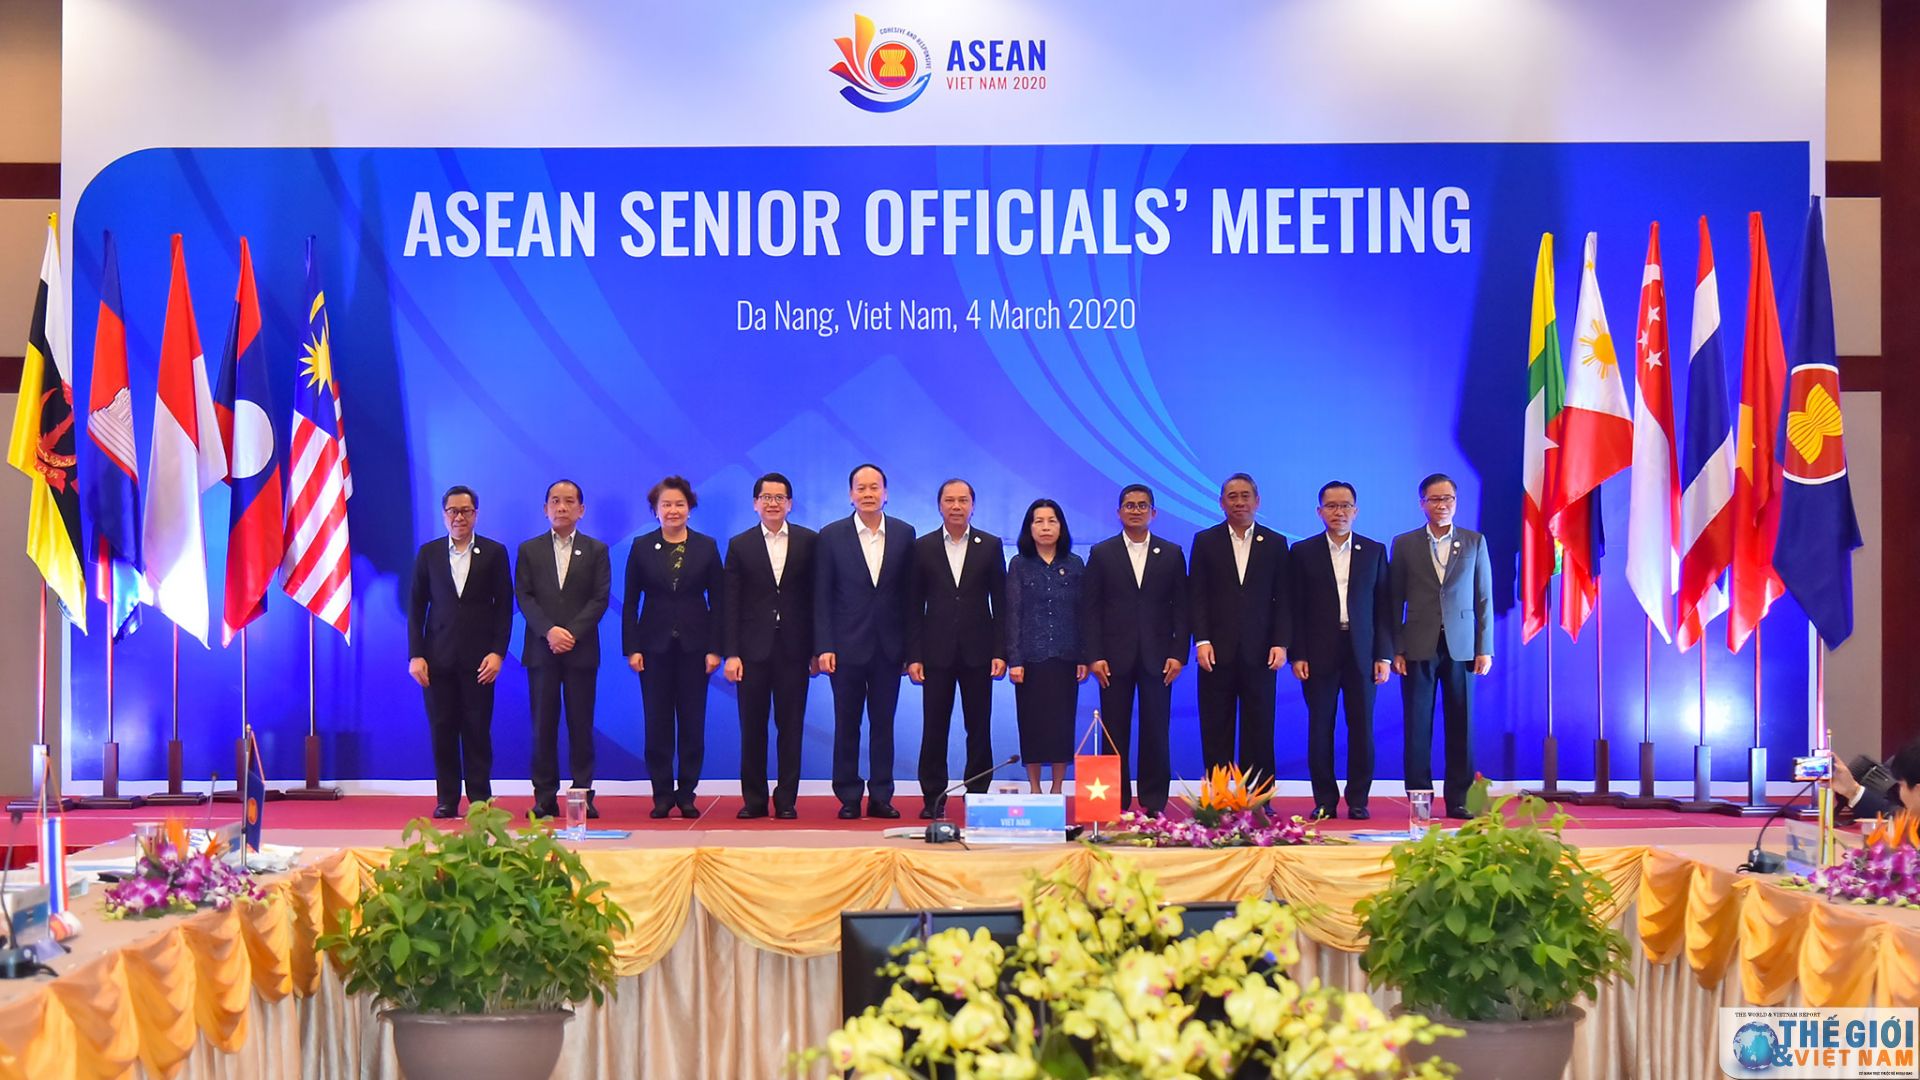 asean senior officials gather in da nang